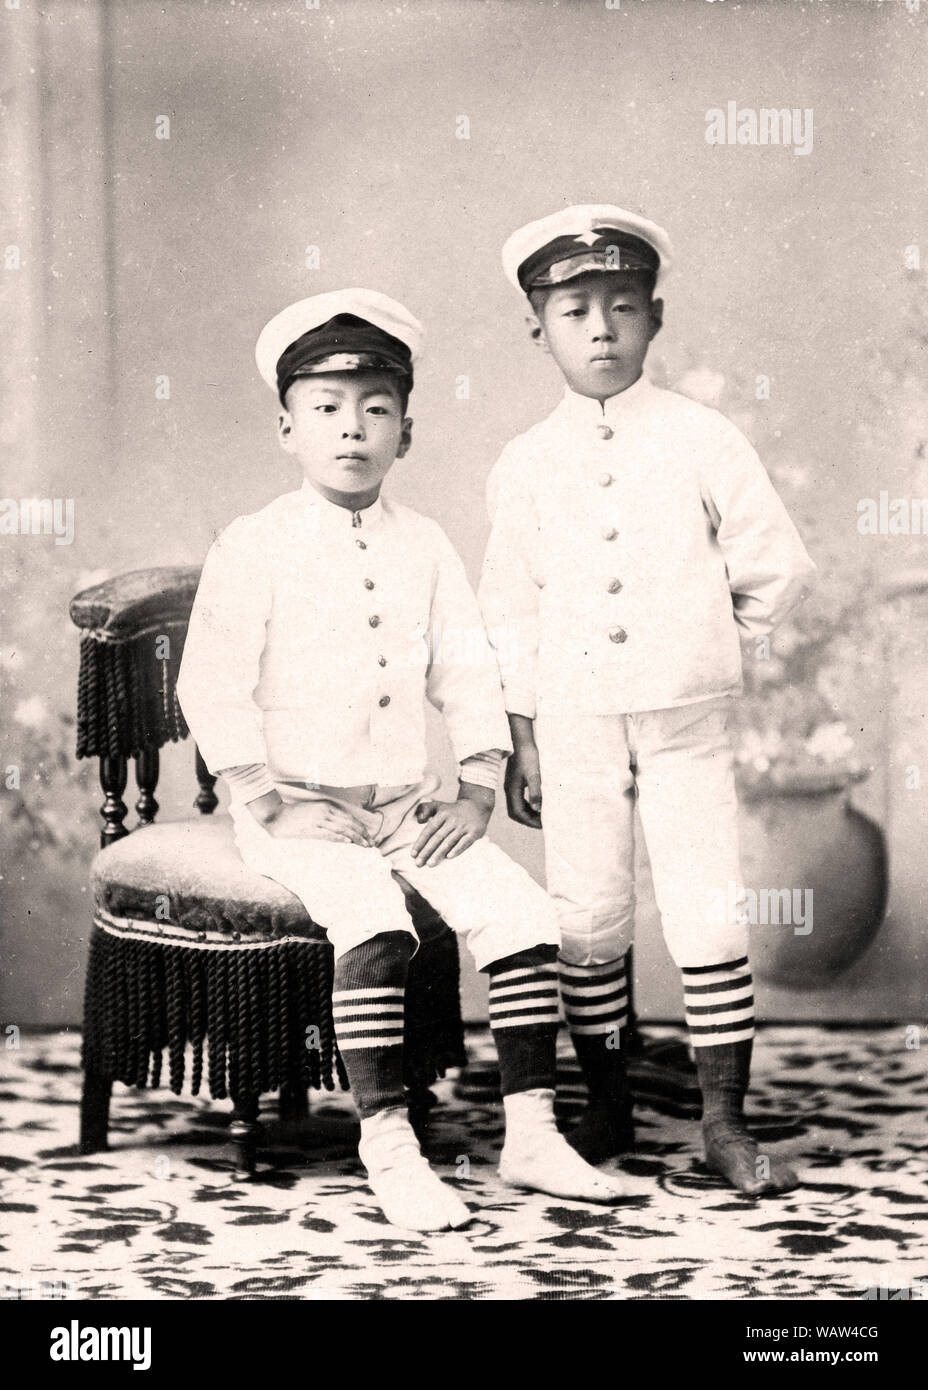 [1890s Japan - Japanische Männer in weißer Uniform] - Studio Foto von 10 und 11 Jahre alten Japanischen Brüder in Uniform. Vom 11. September 1892 (Meiji 25). 20. Jahrhundert vintage Silbergelatineabzug. Stockfoto